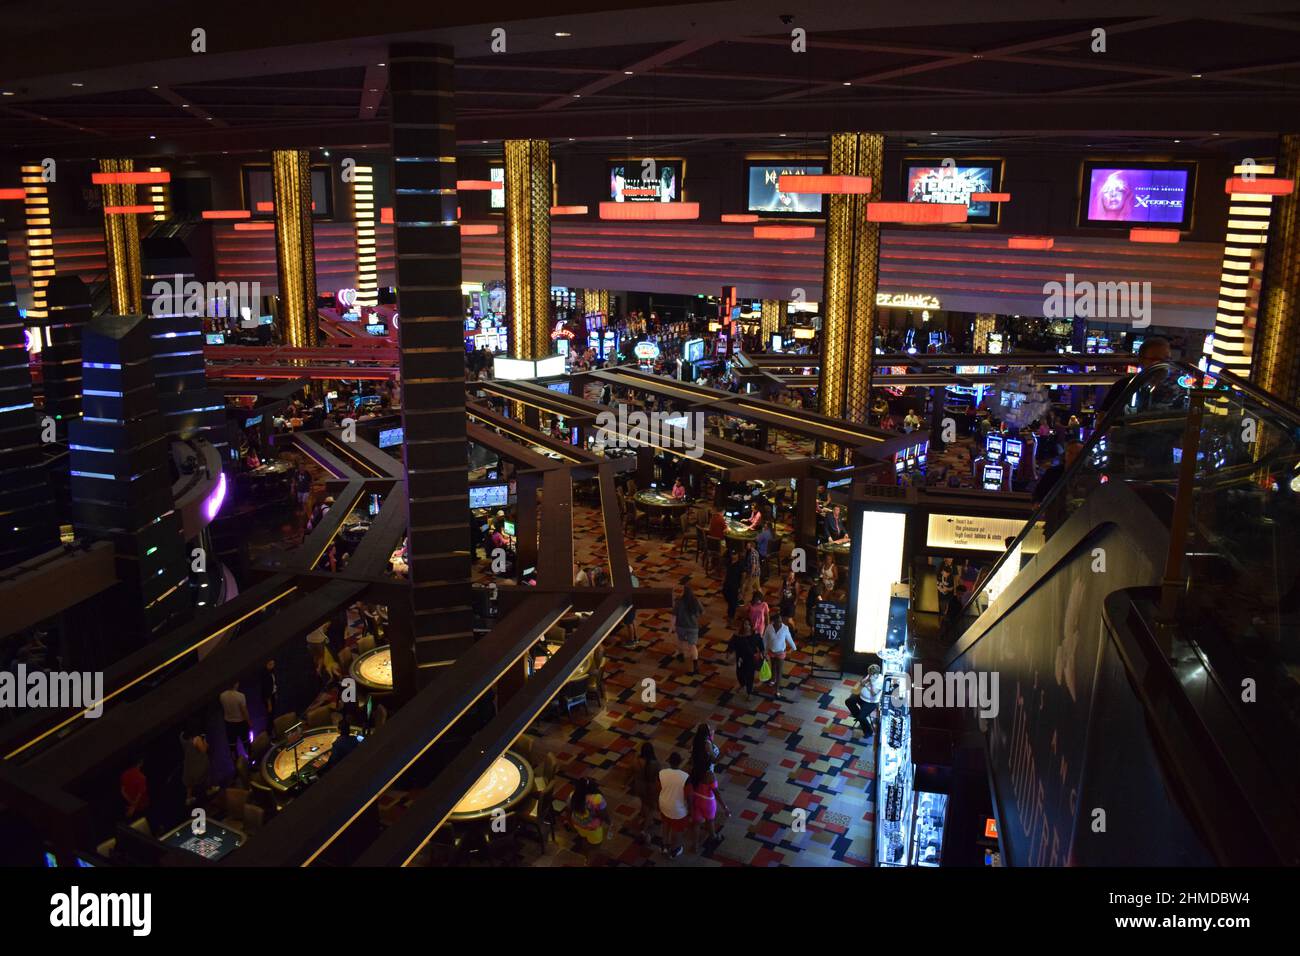 Ängstliche Spieler drängen sich in Las Vegas auf eine Casino-Etage mit der Hoffnung, zu gewinnen. Nachtleben in Nevada, Spielspaß und Spannung. Stockfoto